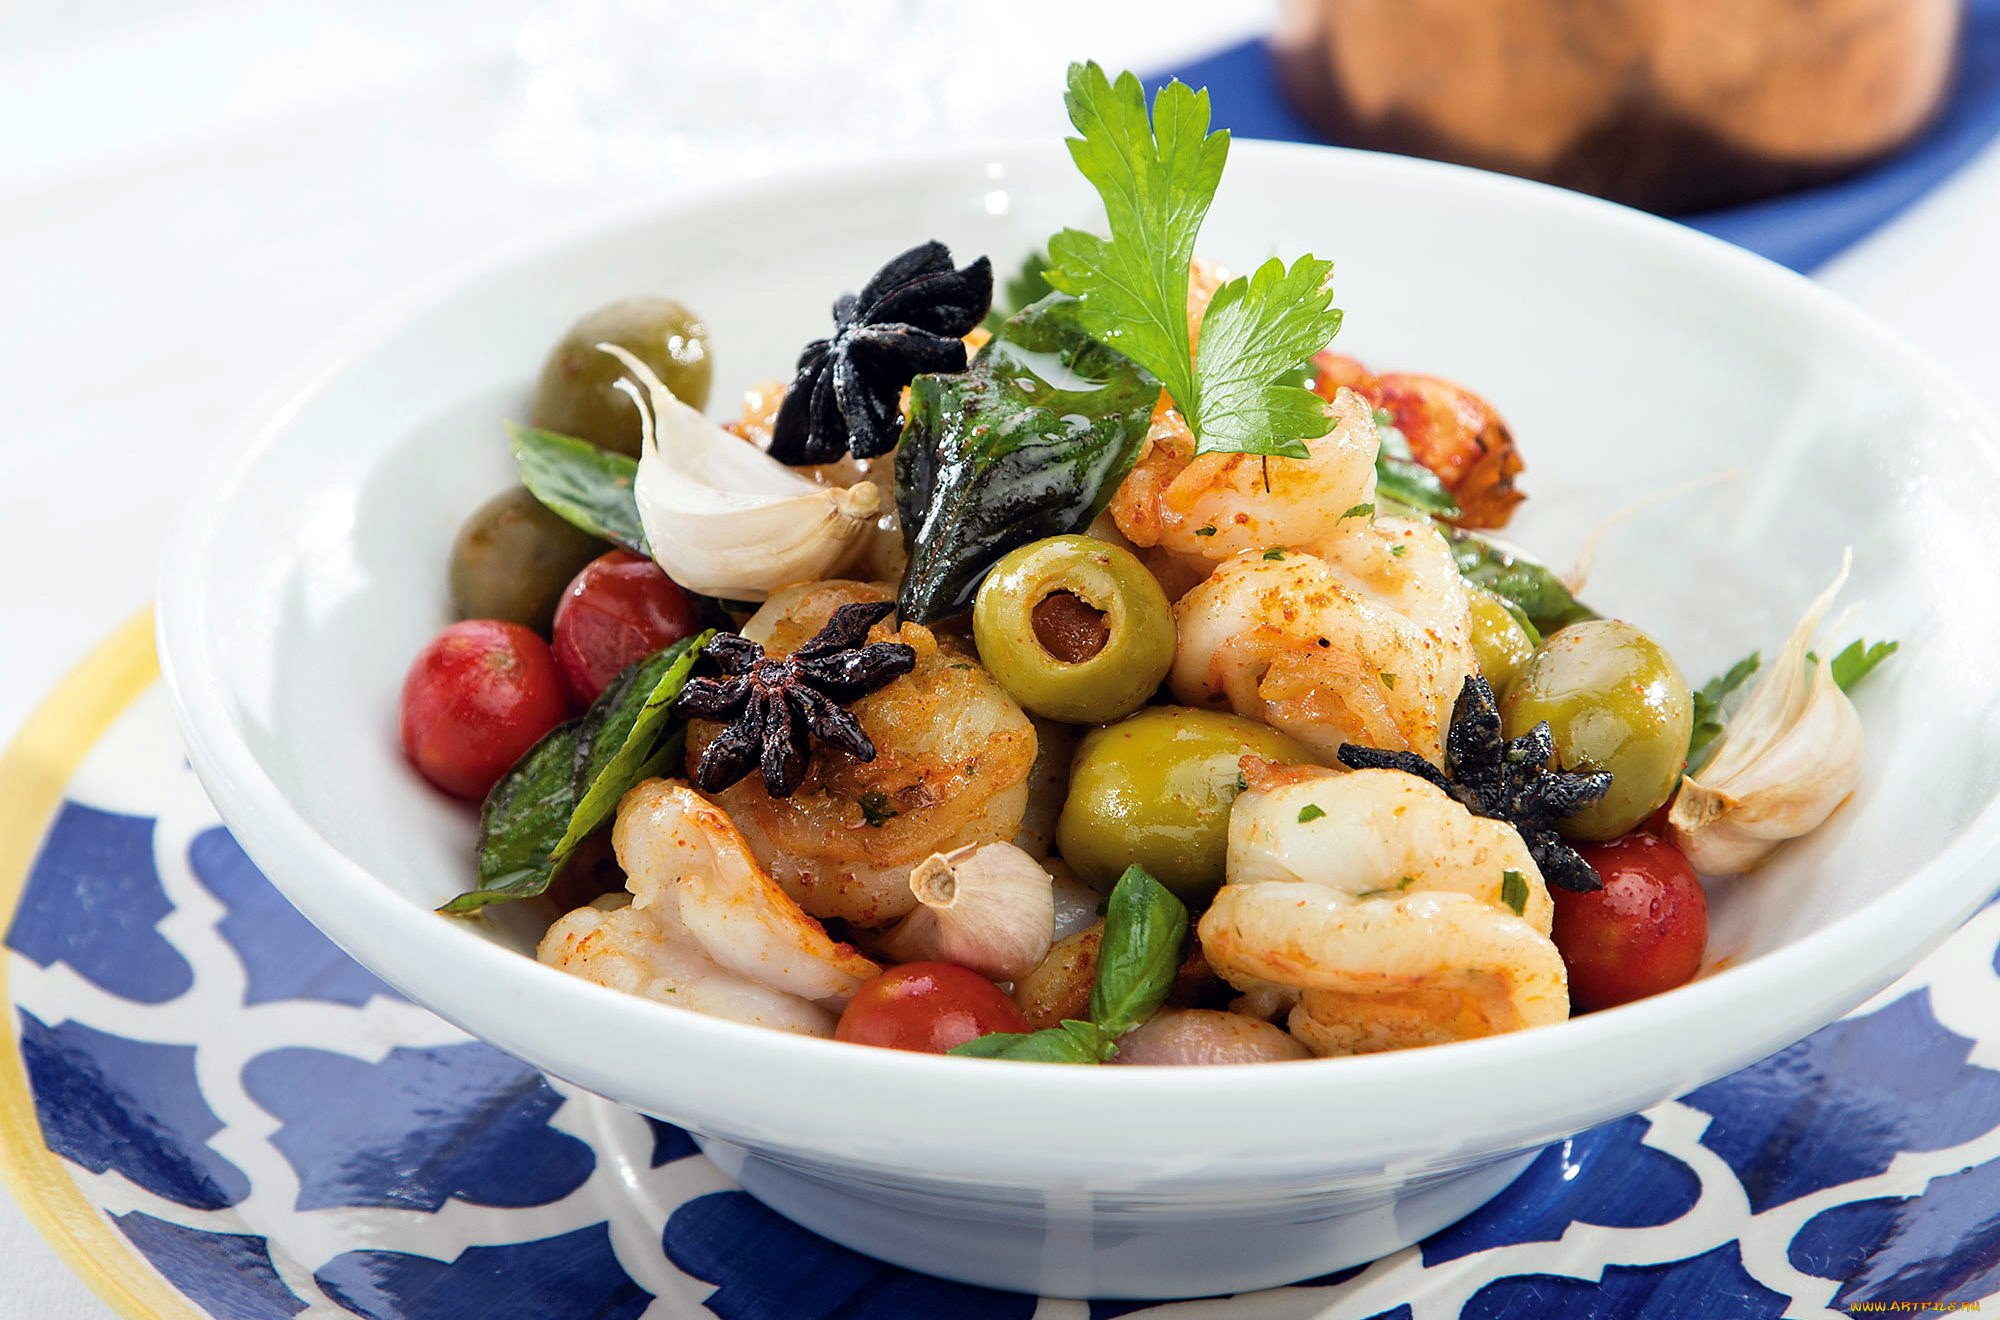 Поиск изображений для запроса "Средиземноморские блюда" или "Греческий салат", "Тунец в соусе из каперсов", "Креветки с чесноком и лимоном